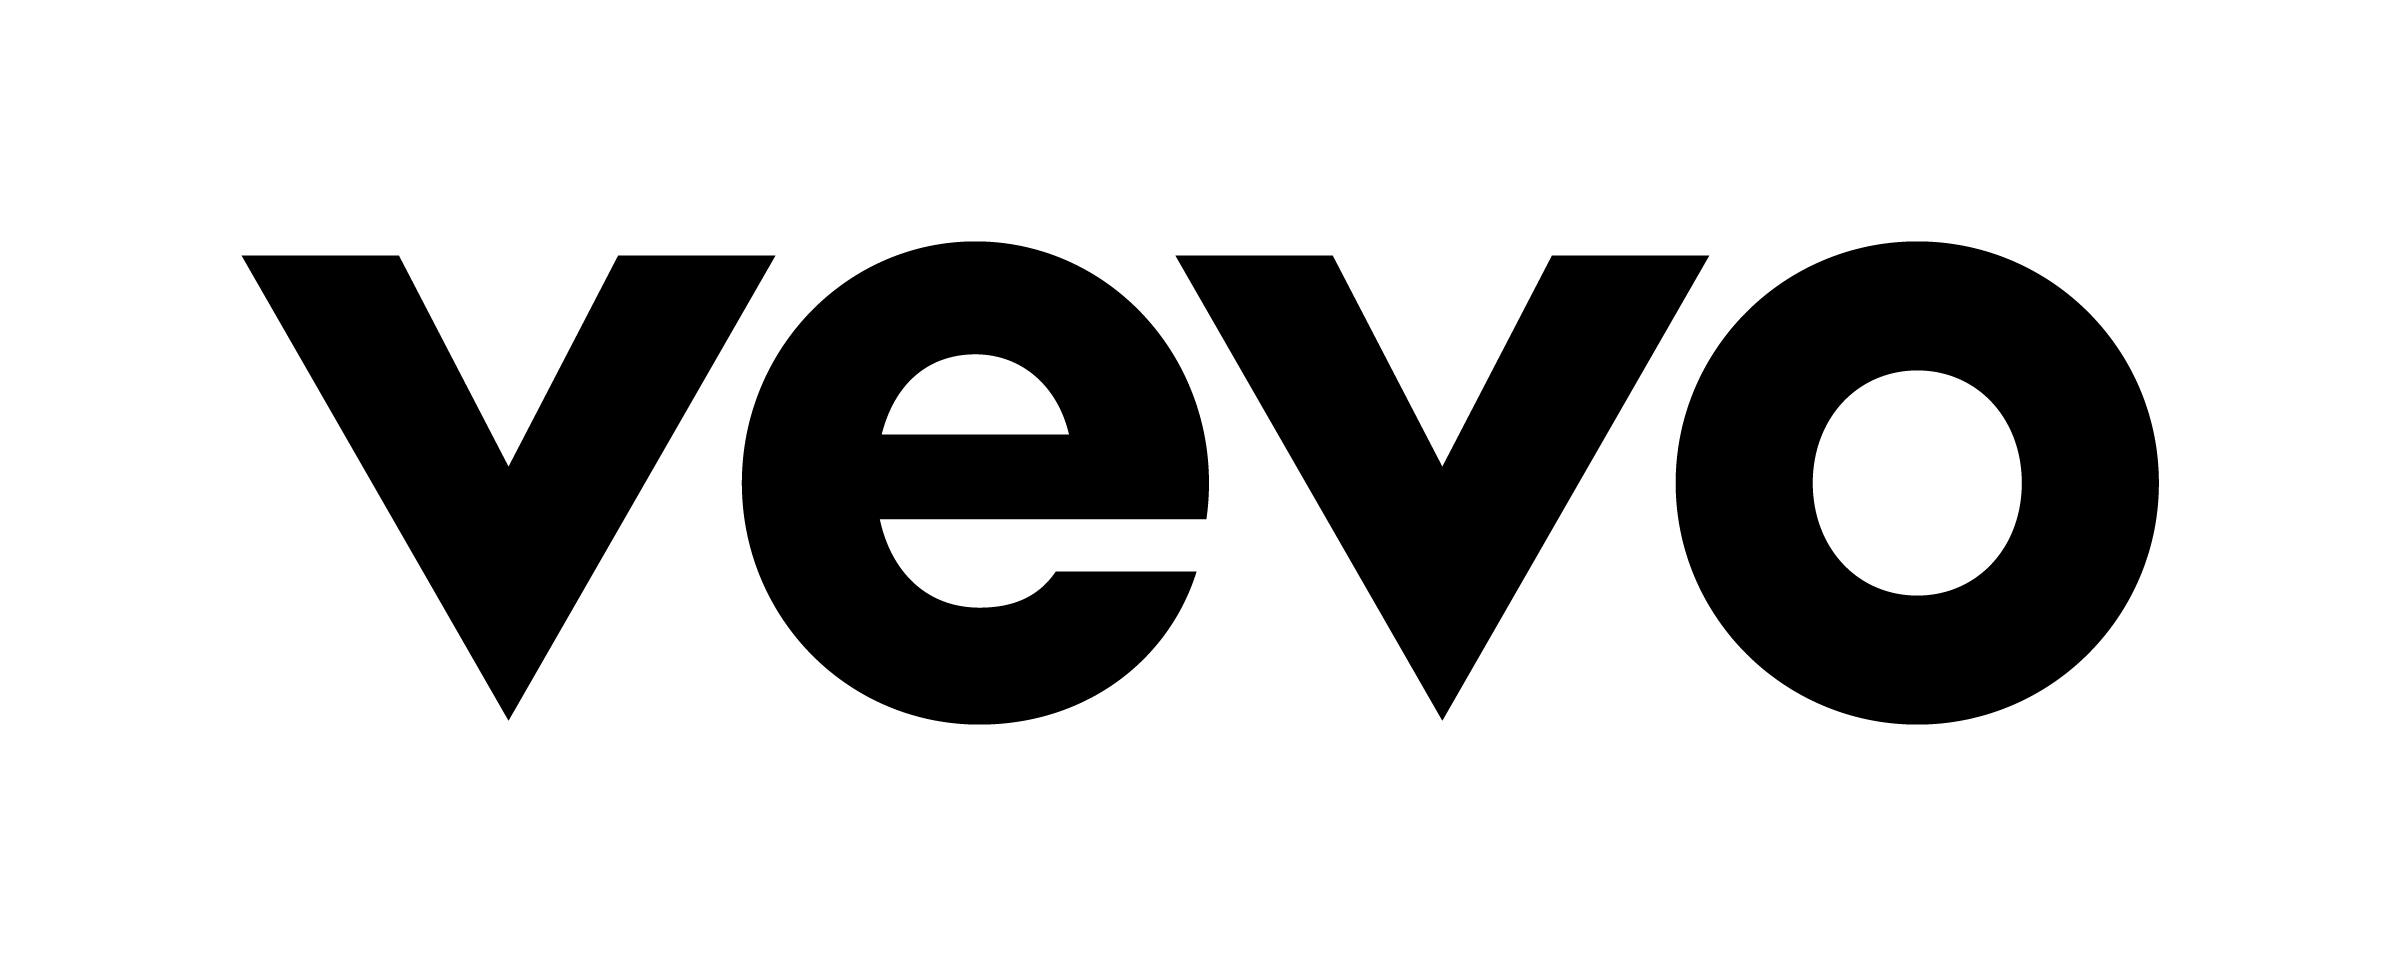 Vevo Logo - Brand